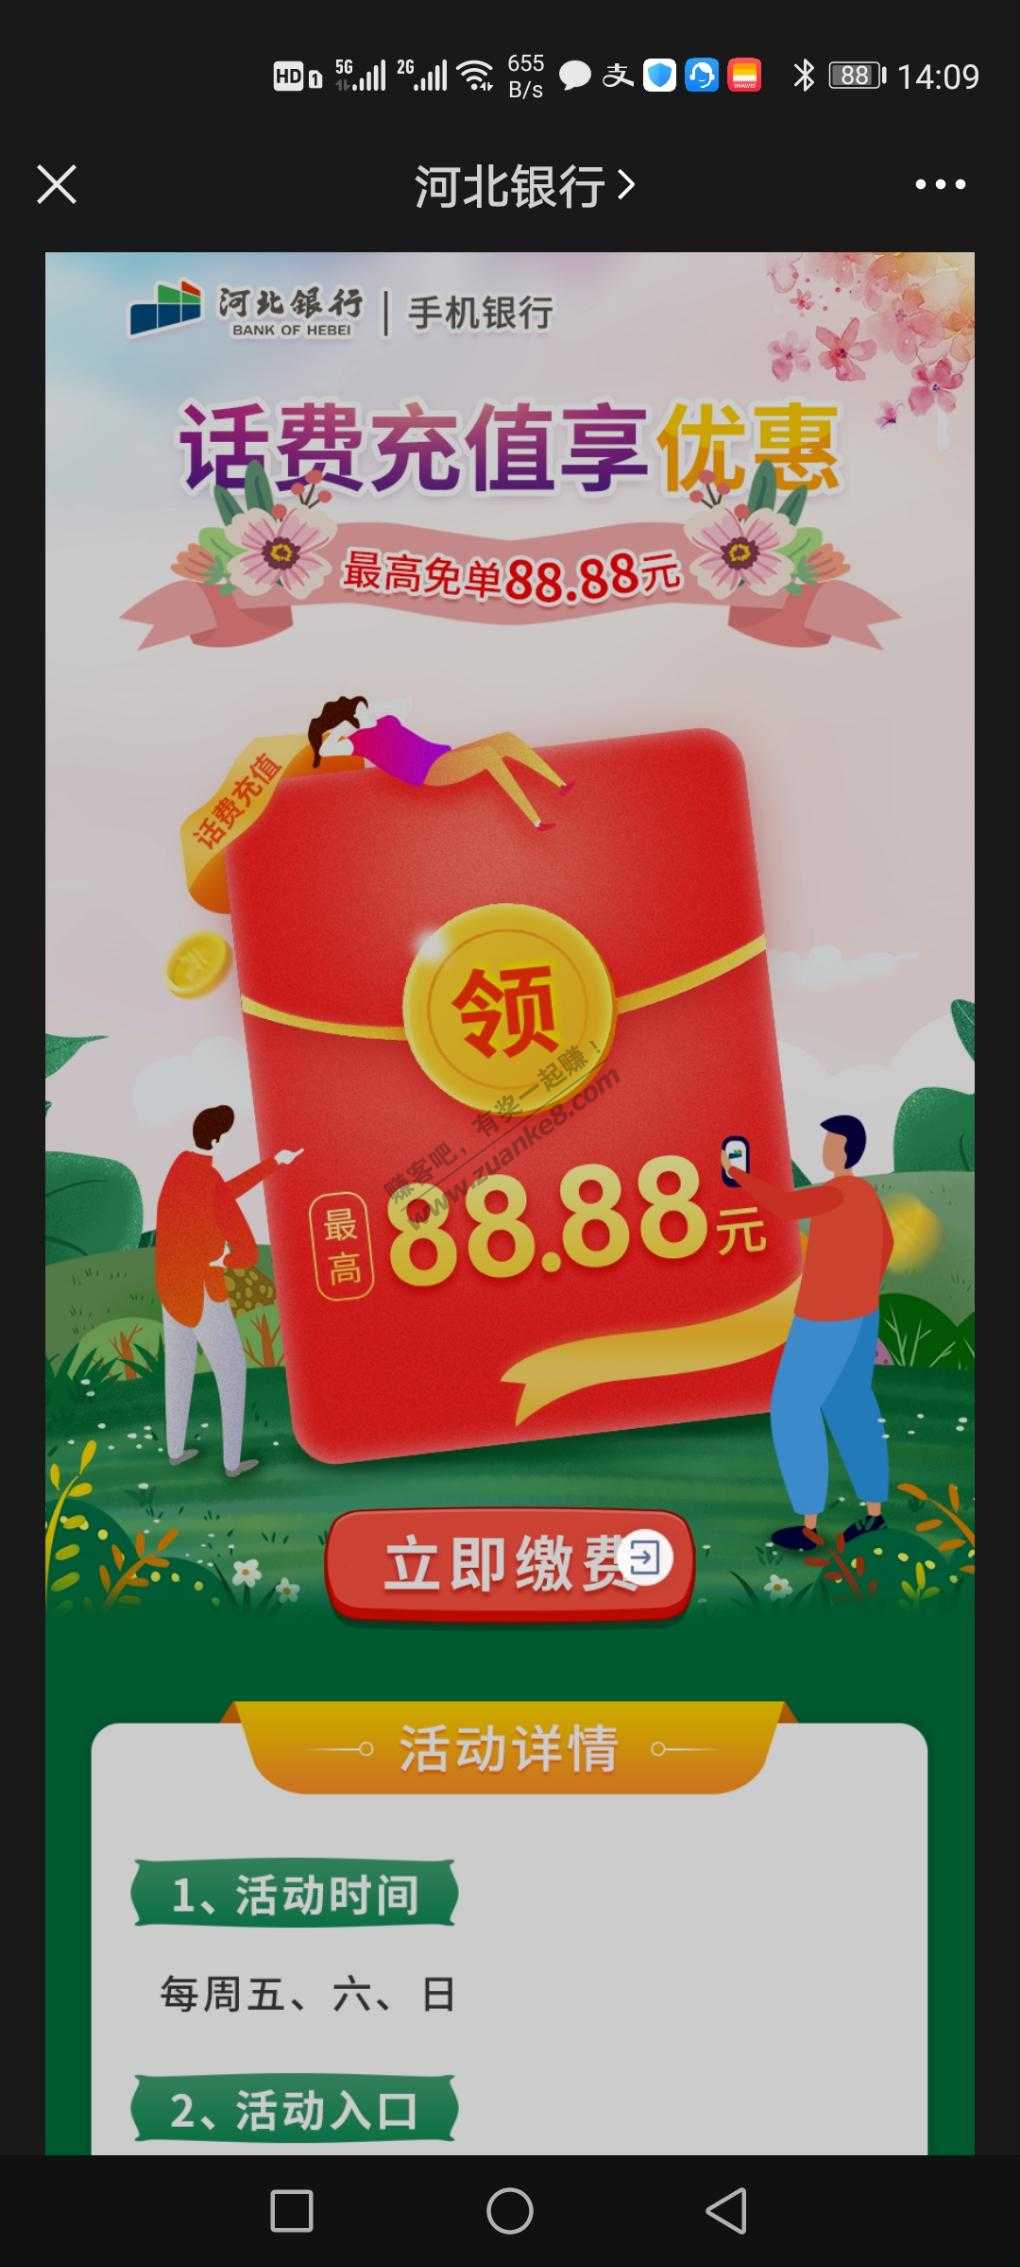 河北银行缴费返现金-最高88.88元-惠小助(52huixz.com)